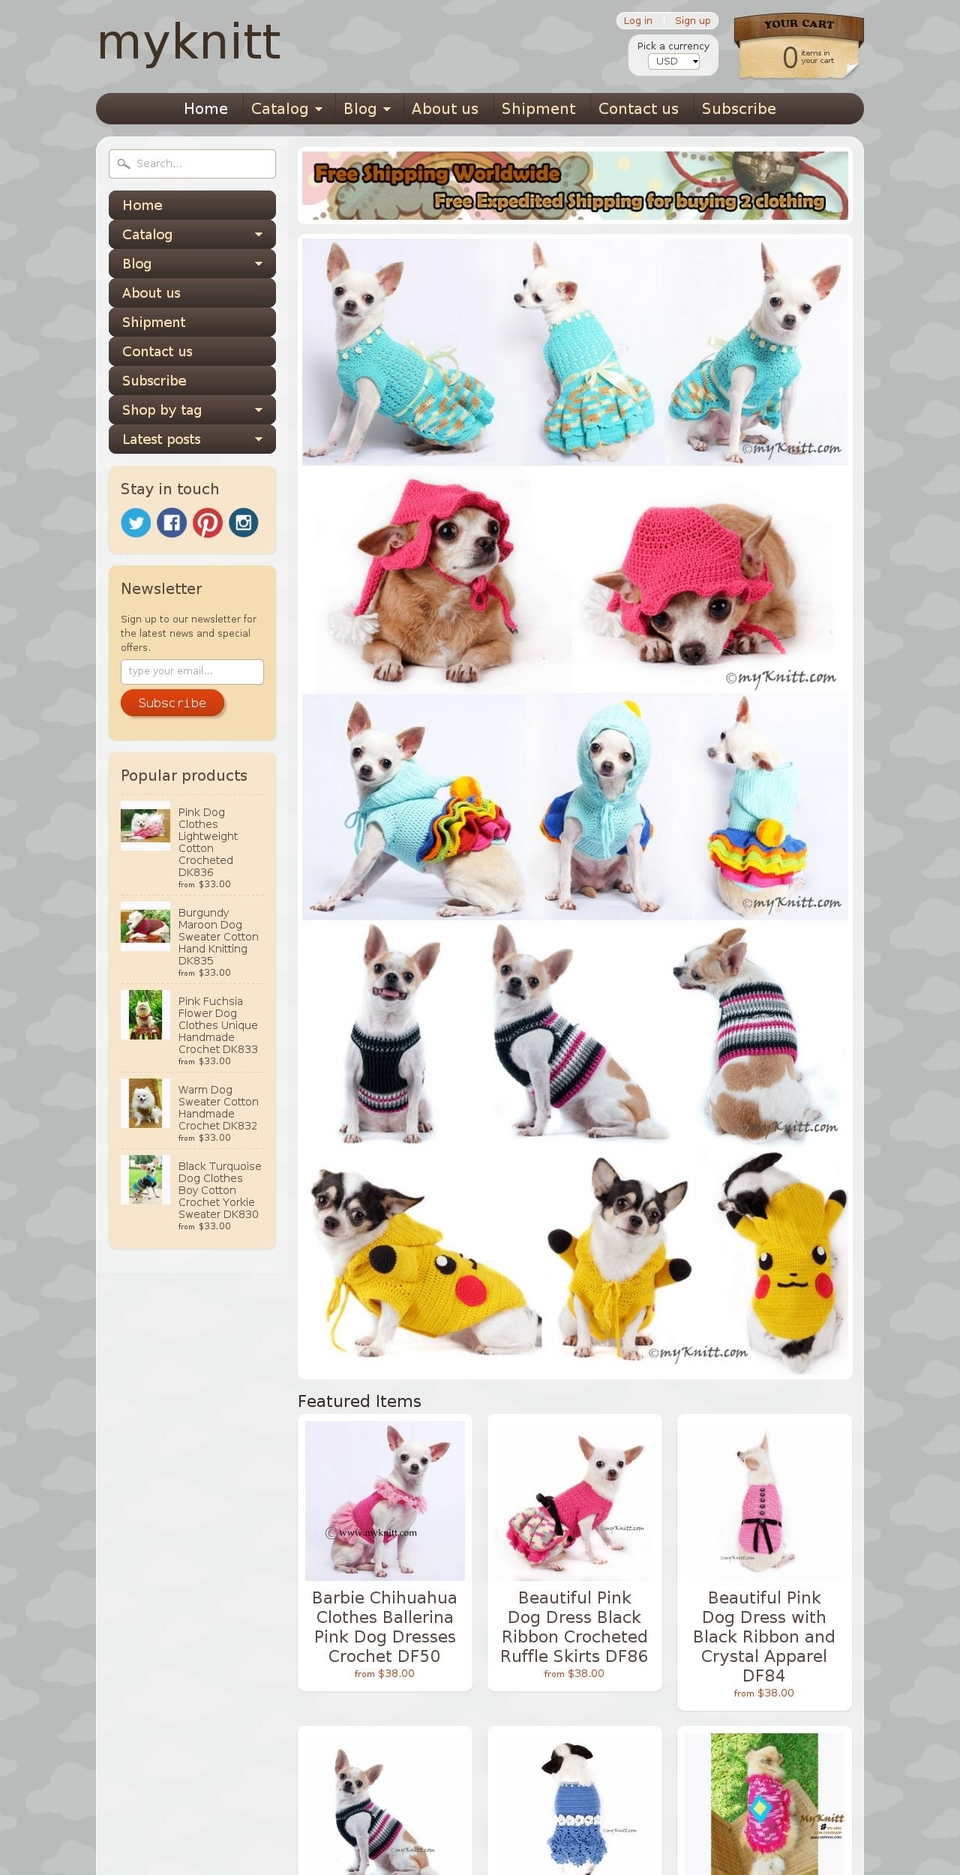 myknitt.com shopify website screenshot